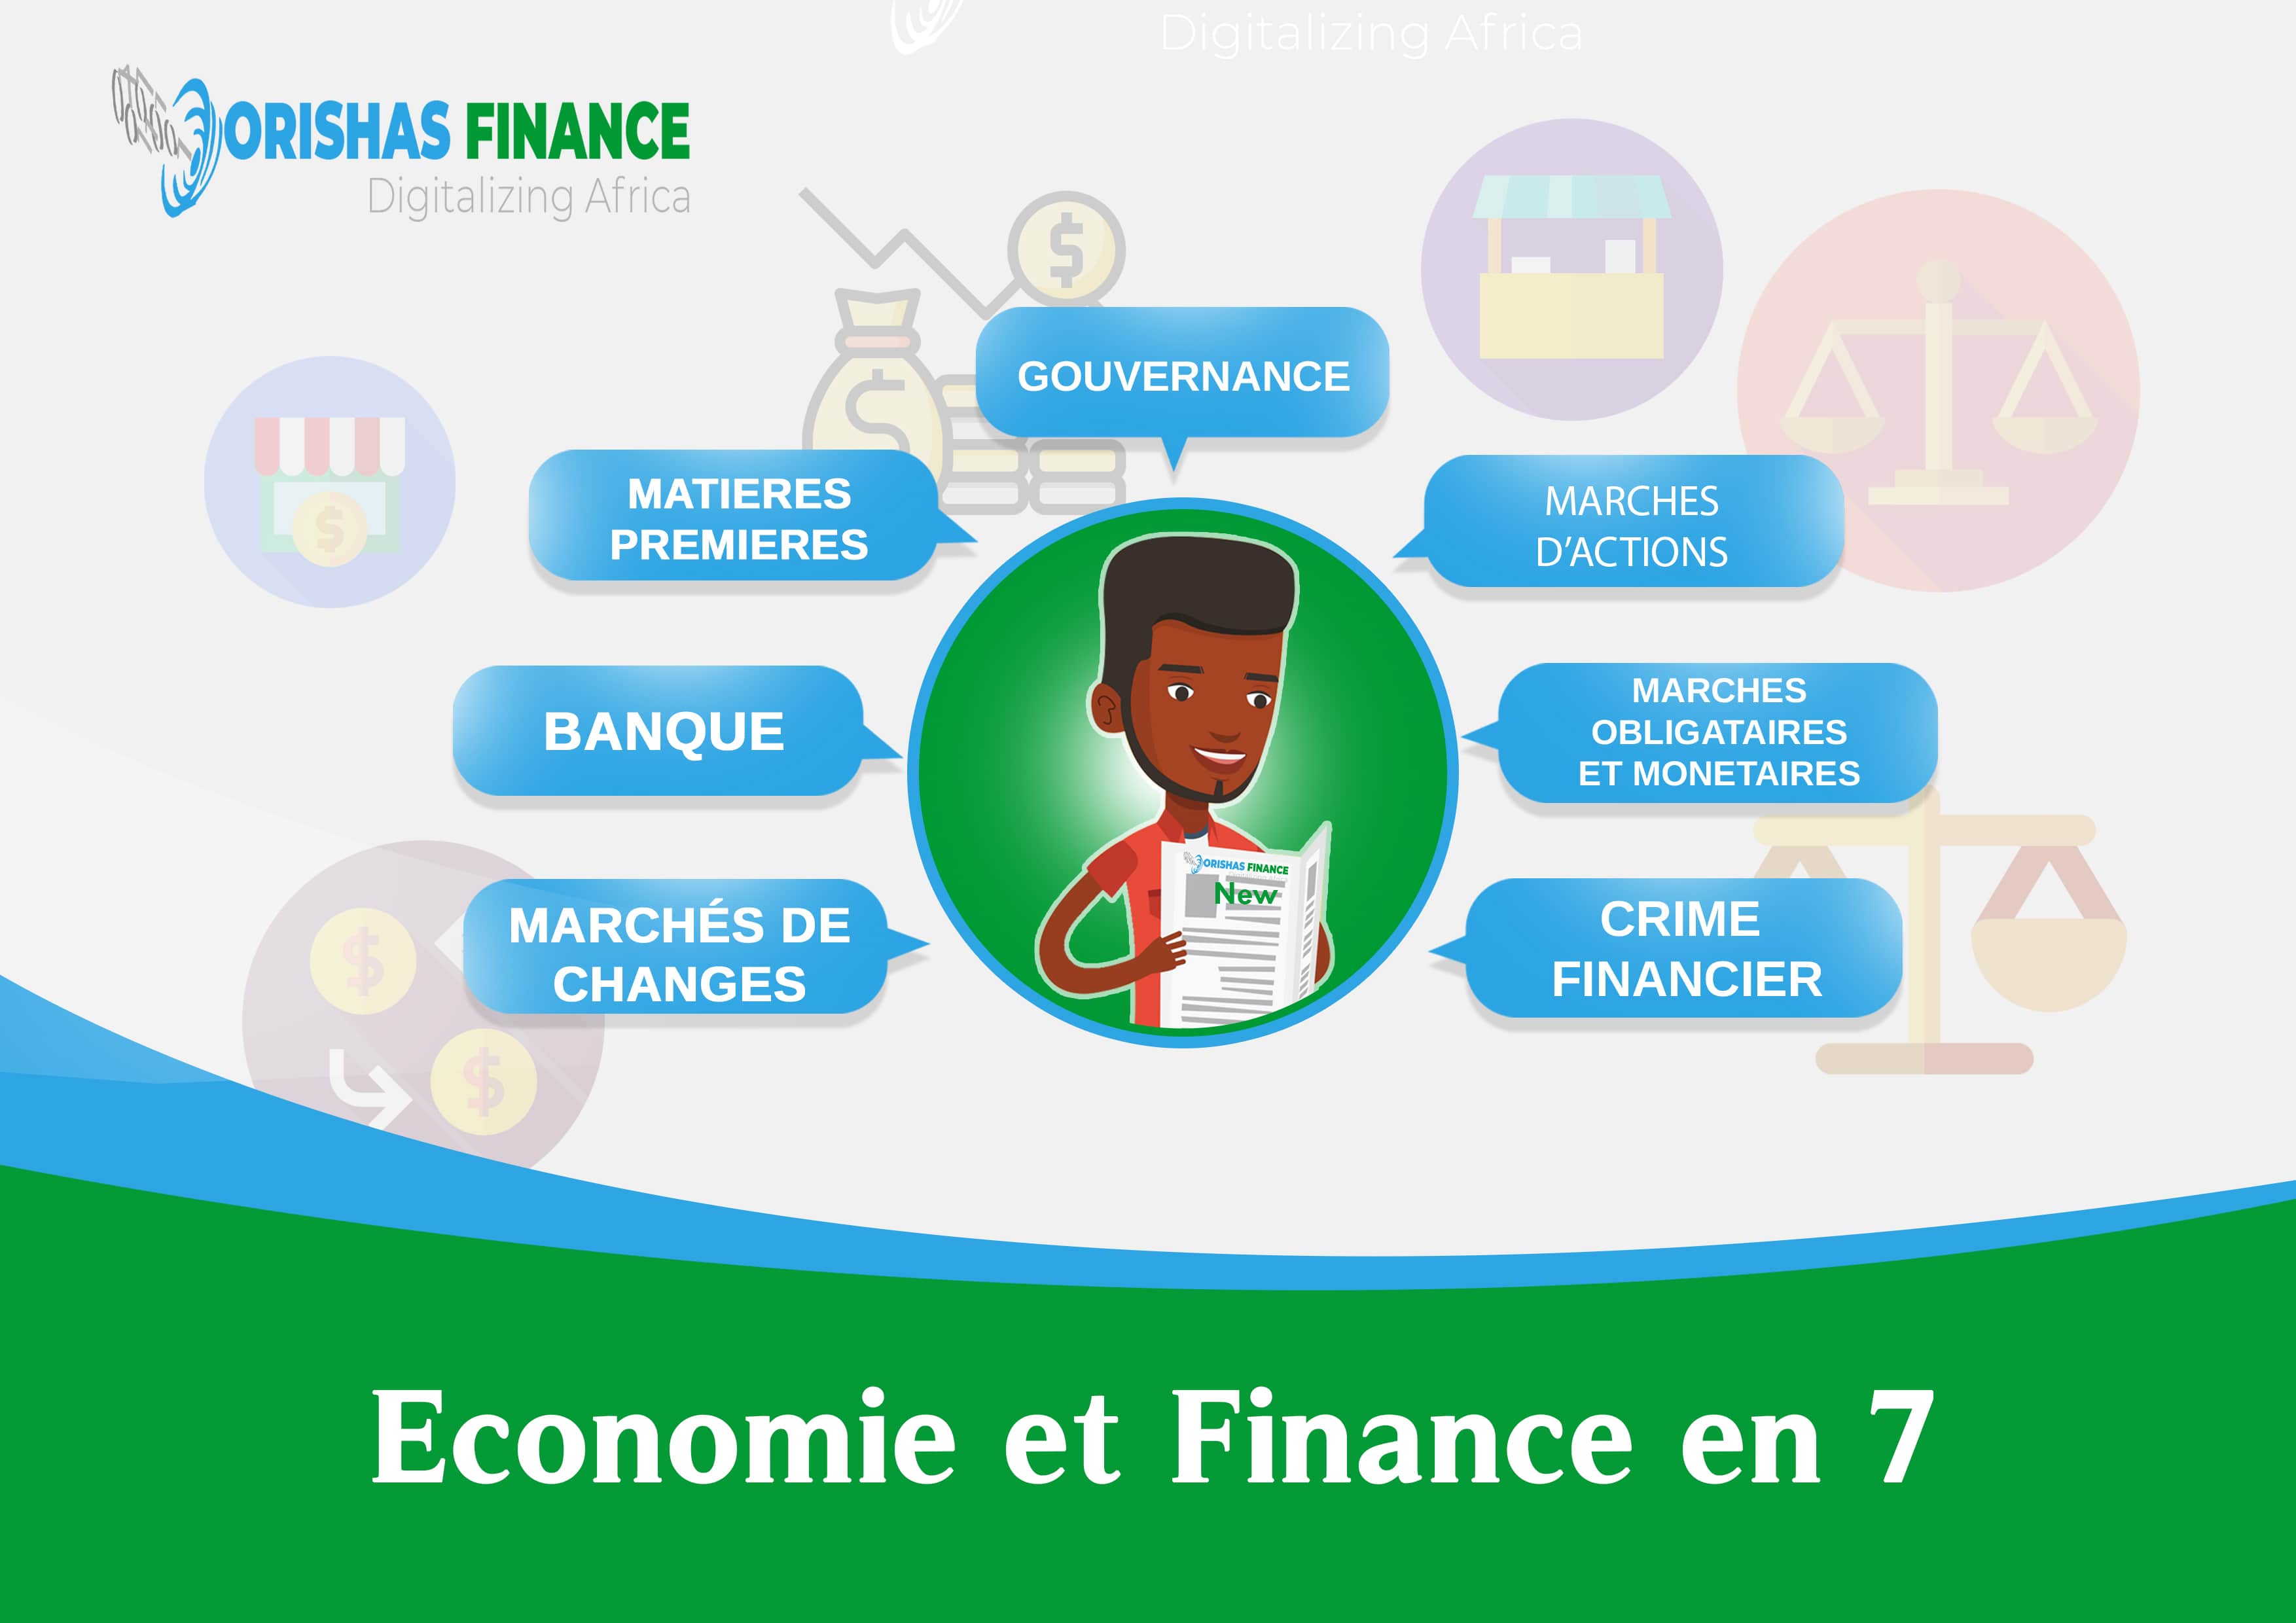  Economie et finance en 7 du 12 au 16 Avril 2021 